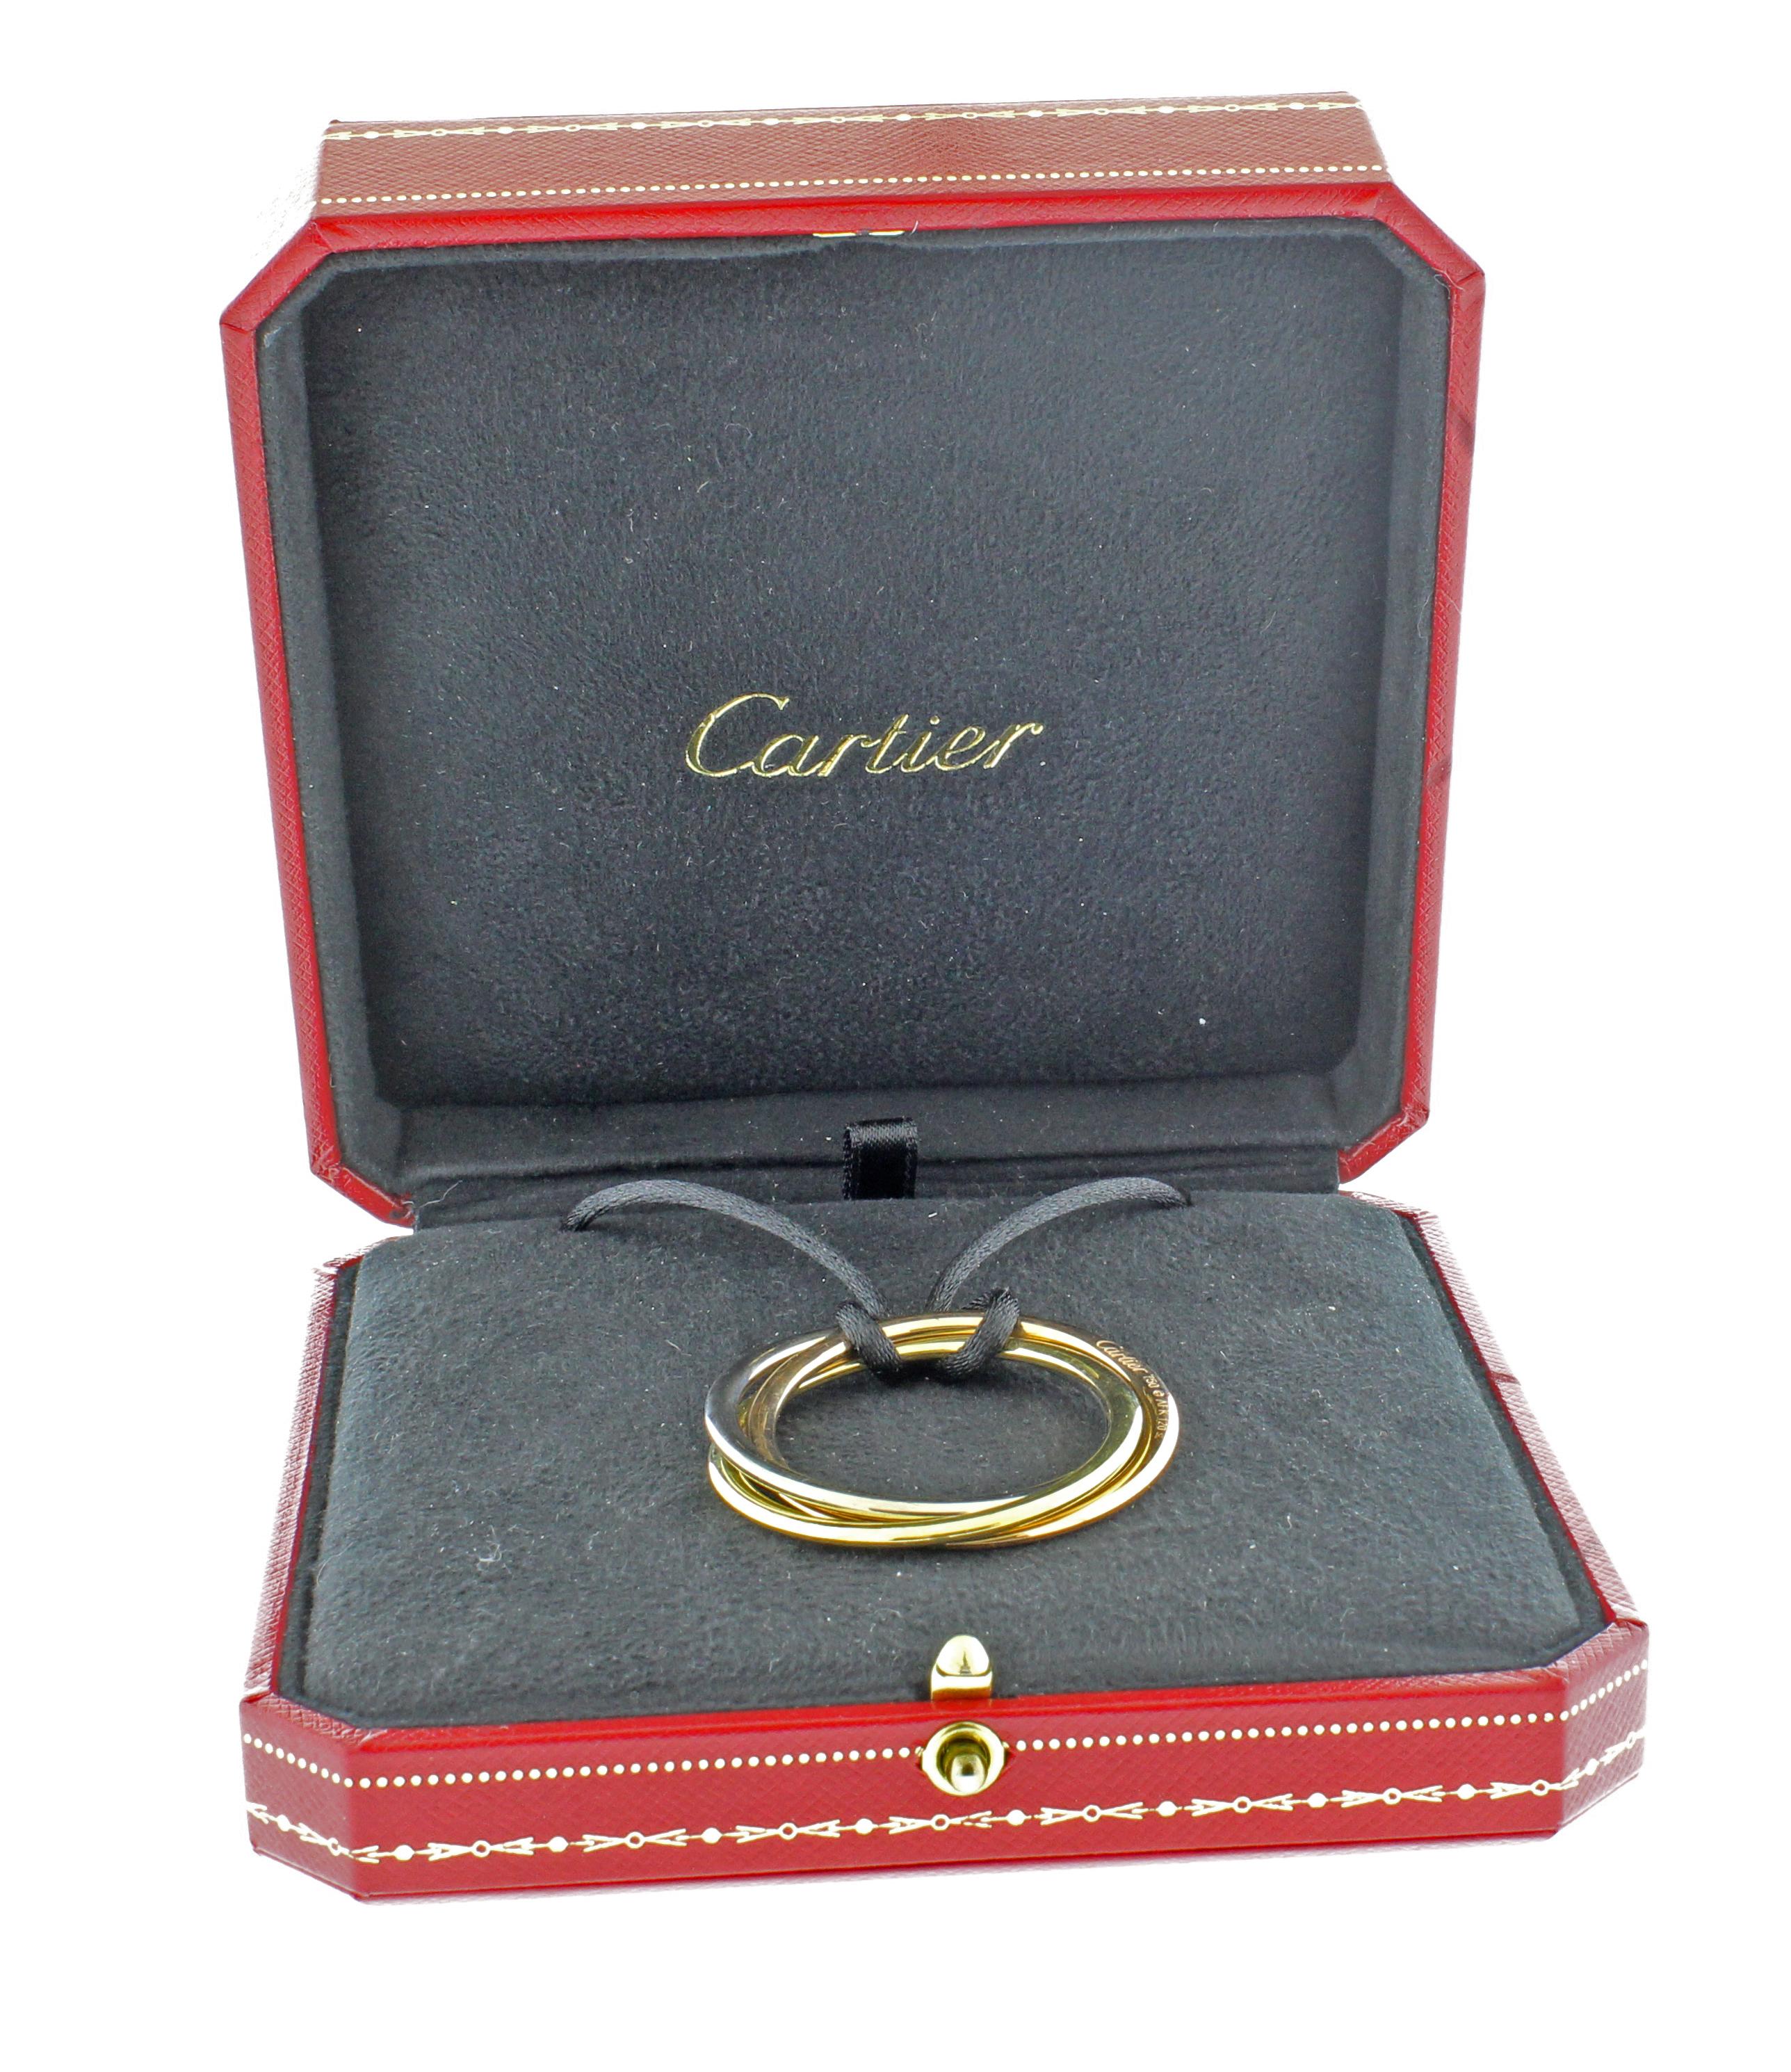 La collection Trinity a été présentée pour la première fois en 1924 et se distingue par ses trois bracelets entrelacés, chacun fabriqué dans une couleur d'or différente : l'or jaune représentant la fidélité, l'or rose l'amour et l'or blanc